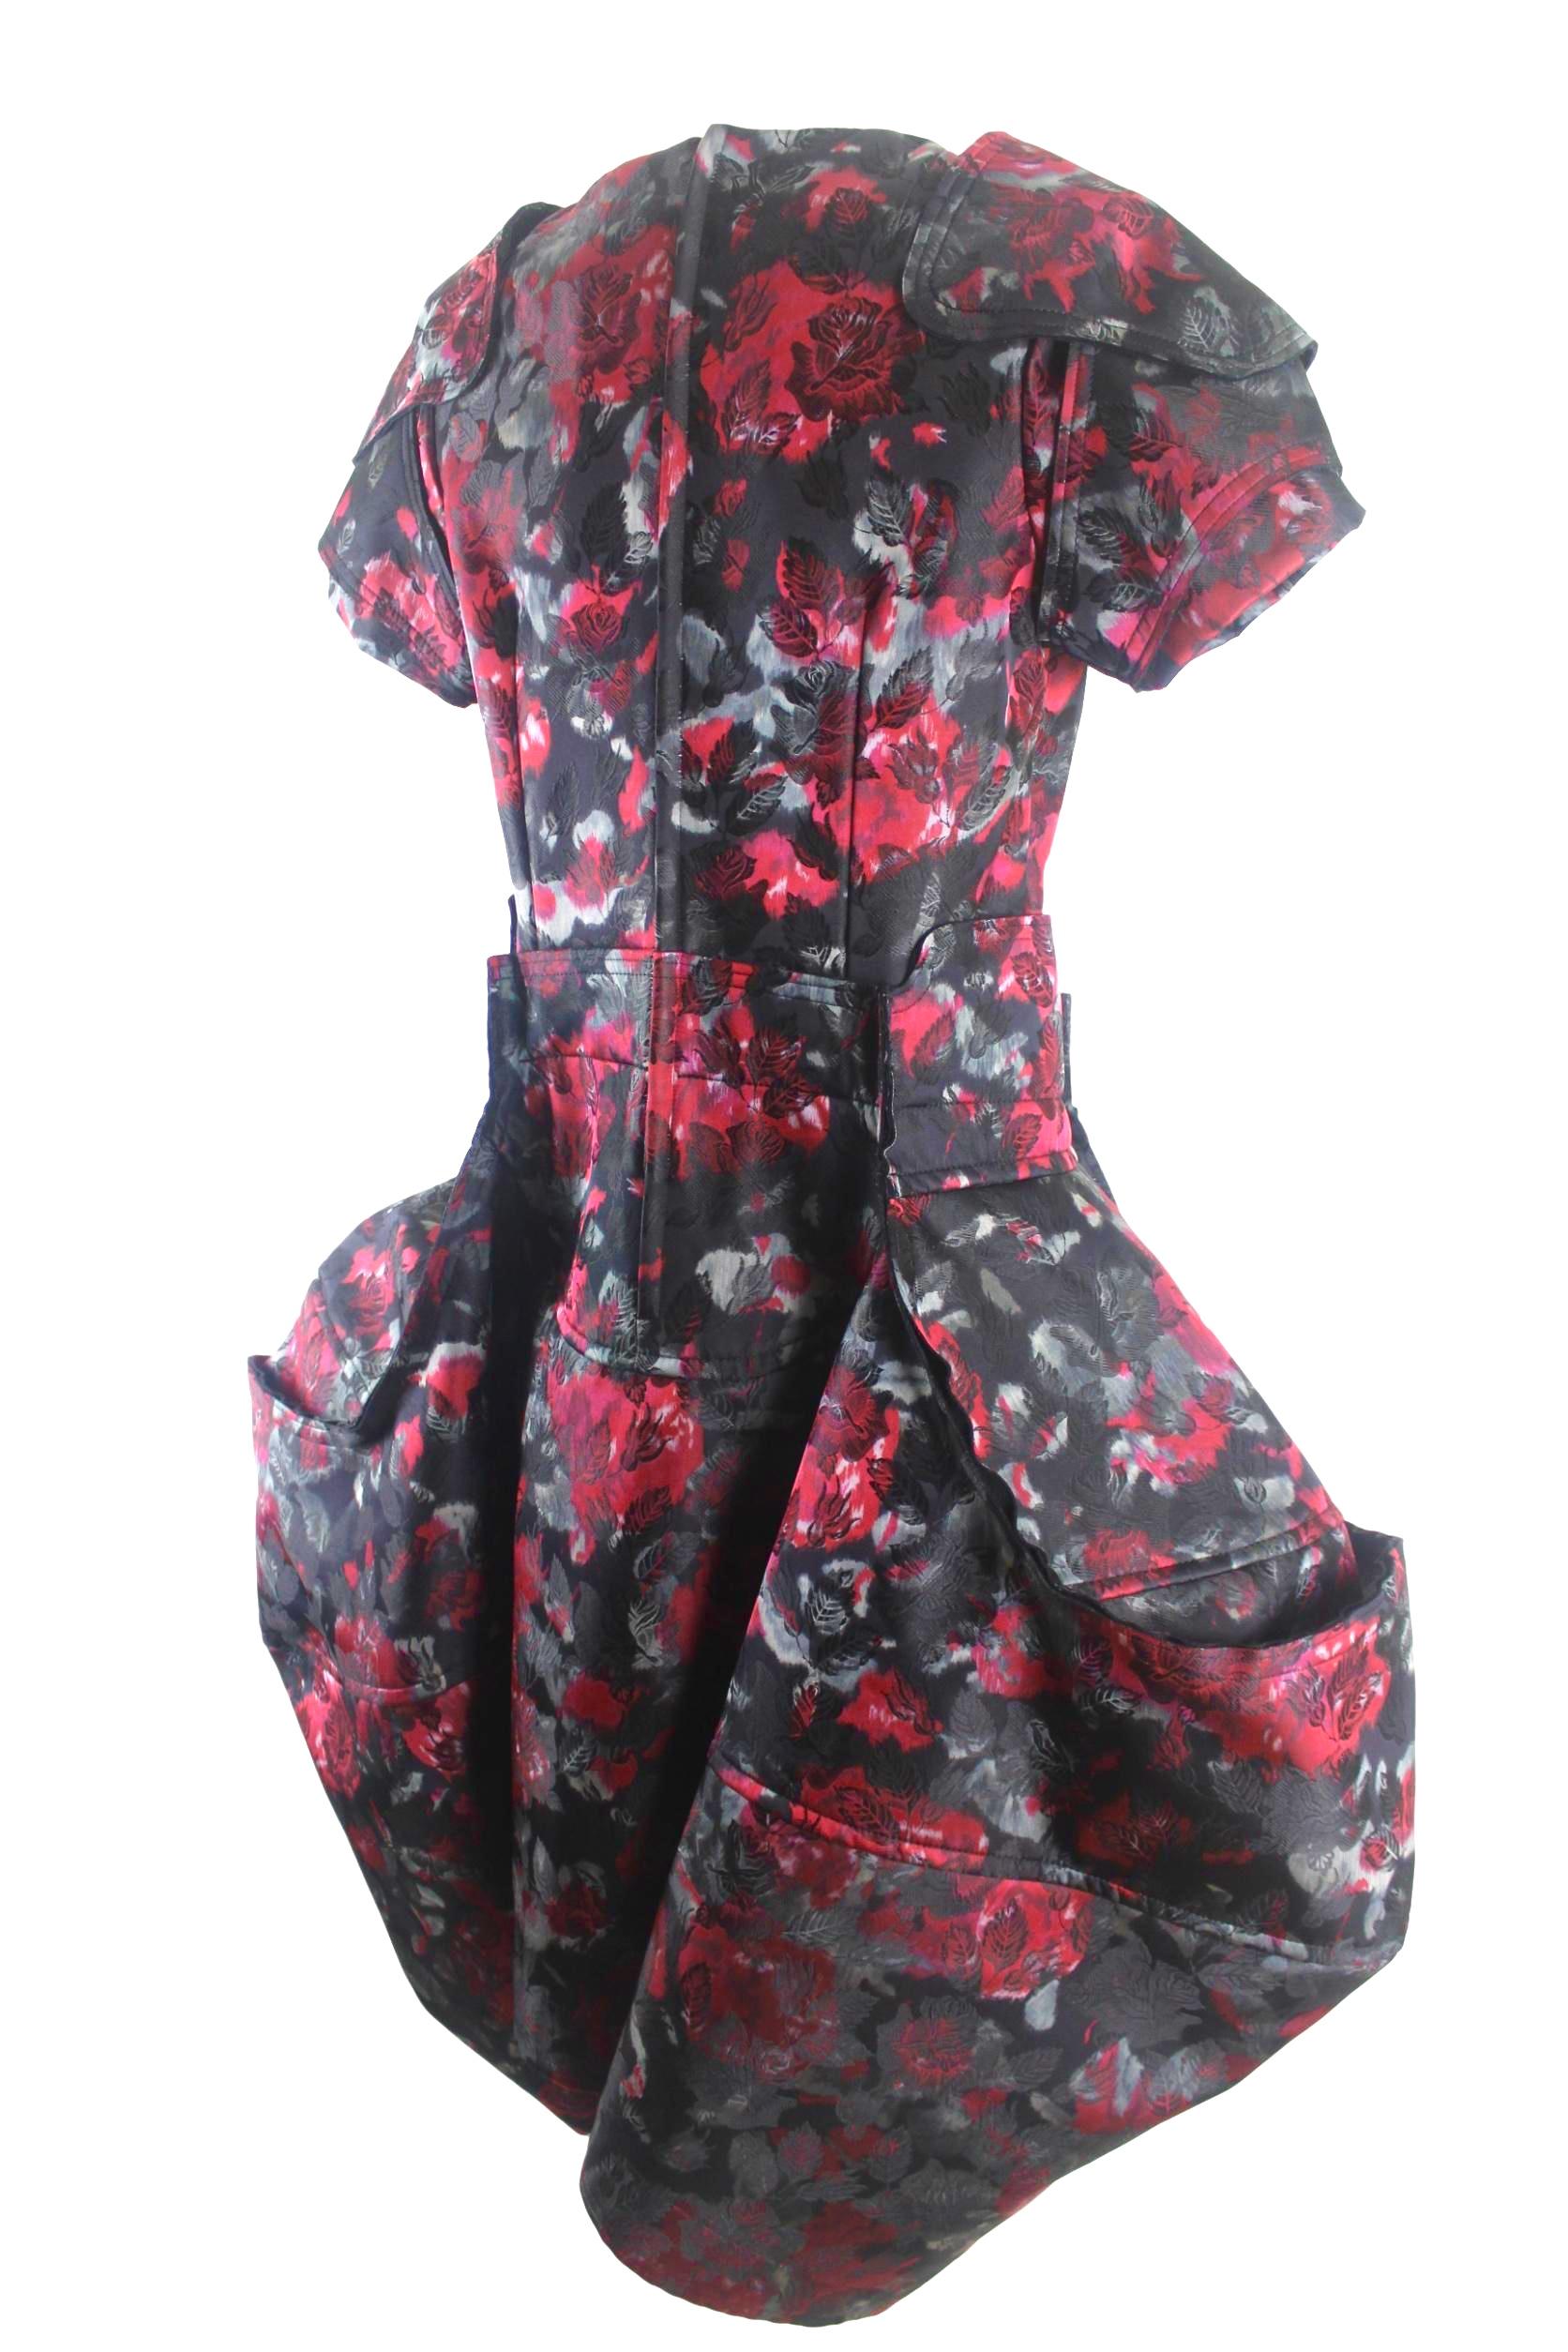 Comme des Garcons Samurai Armour Dress 2016 Collection For Sale 1